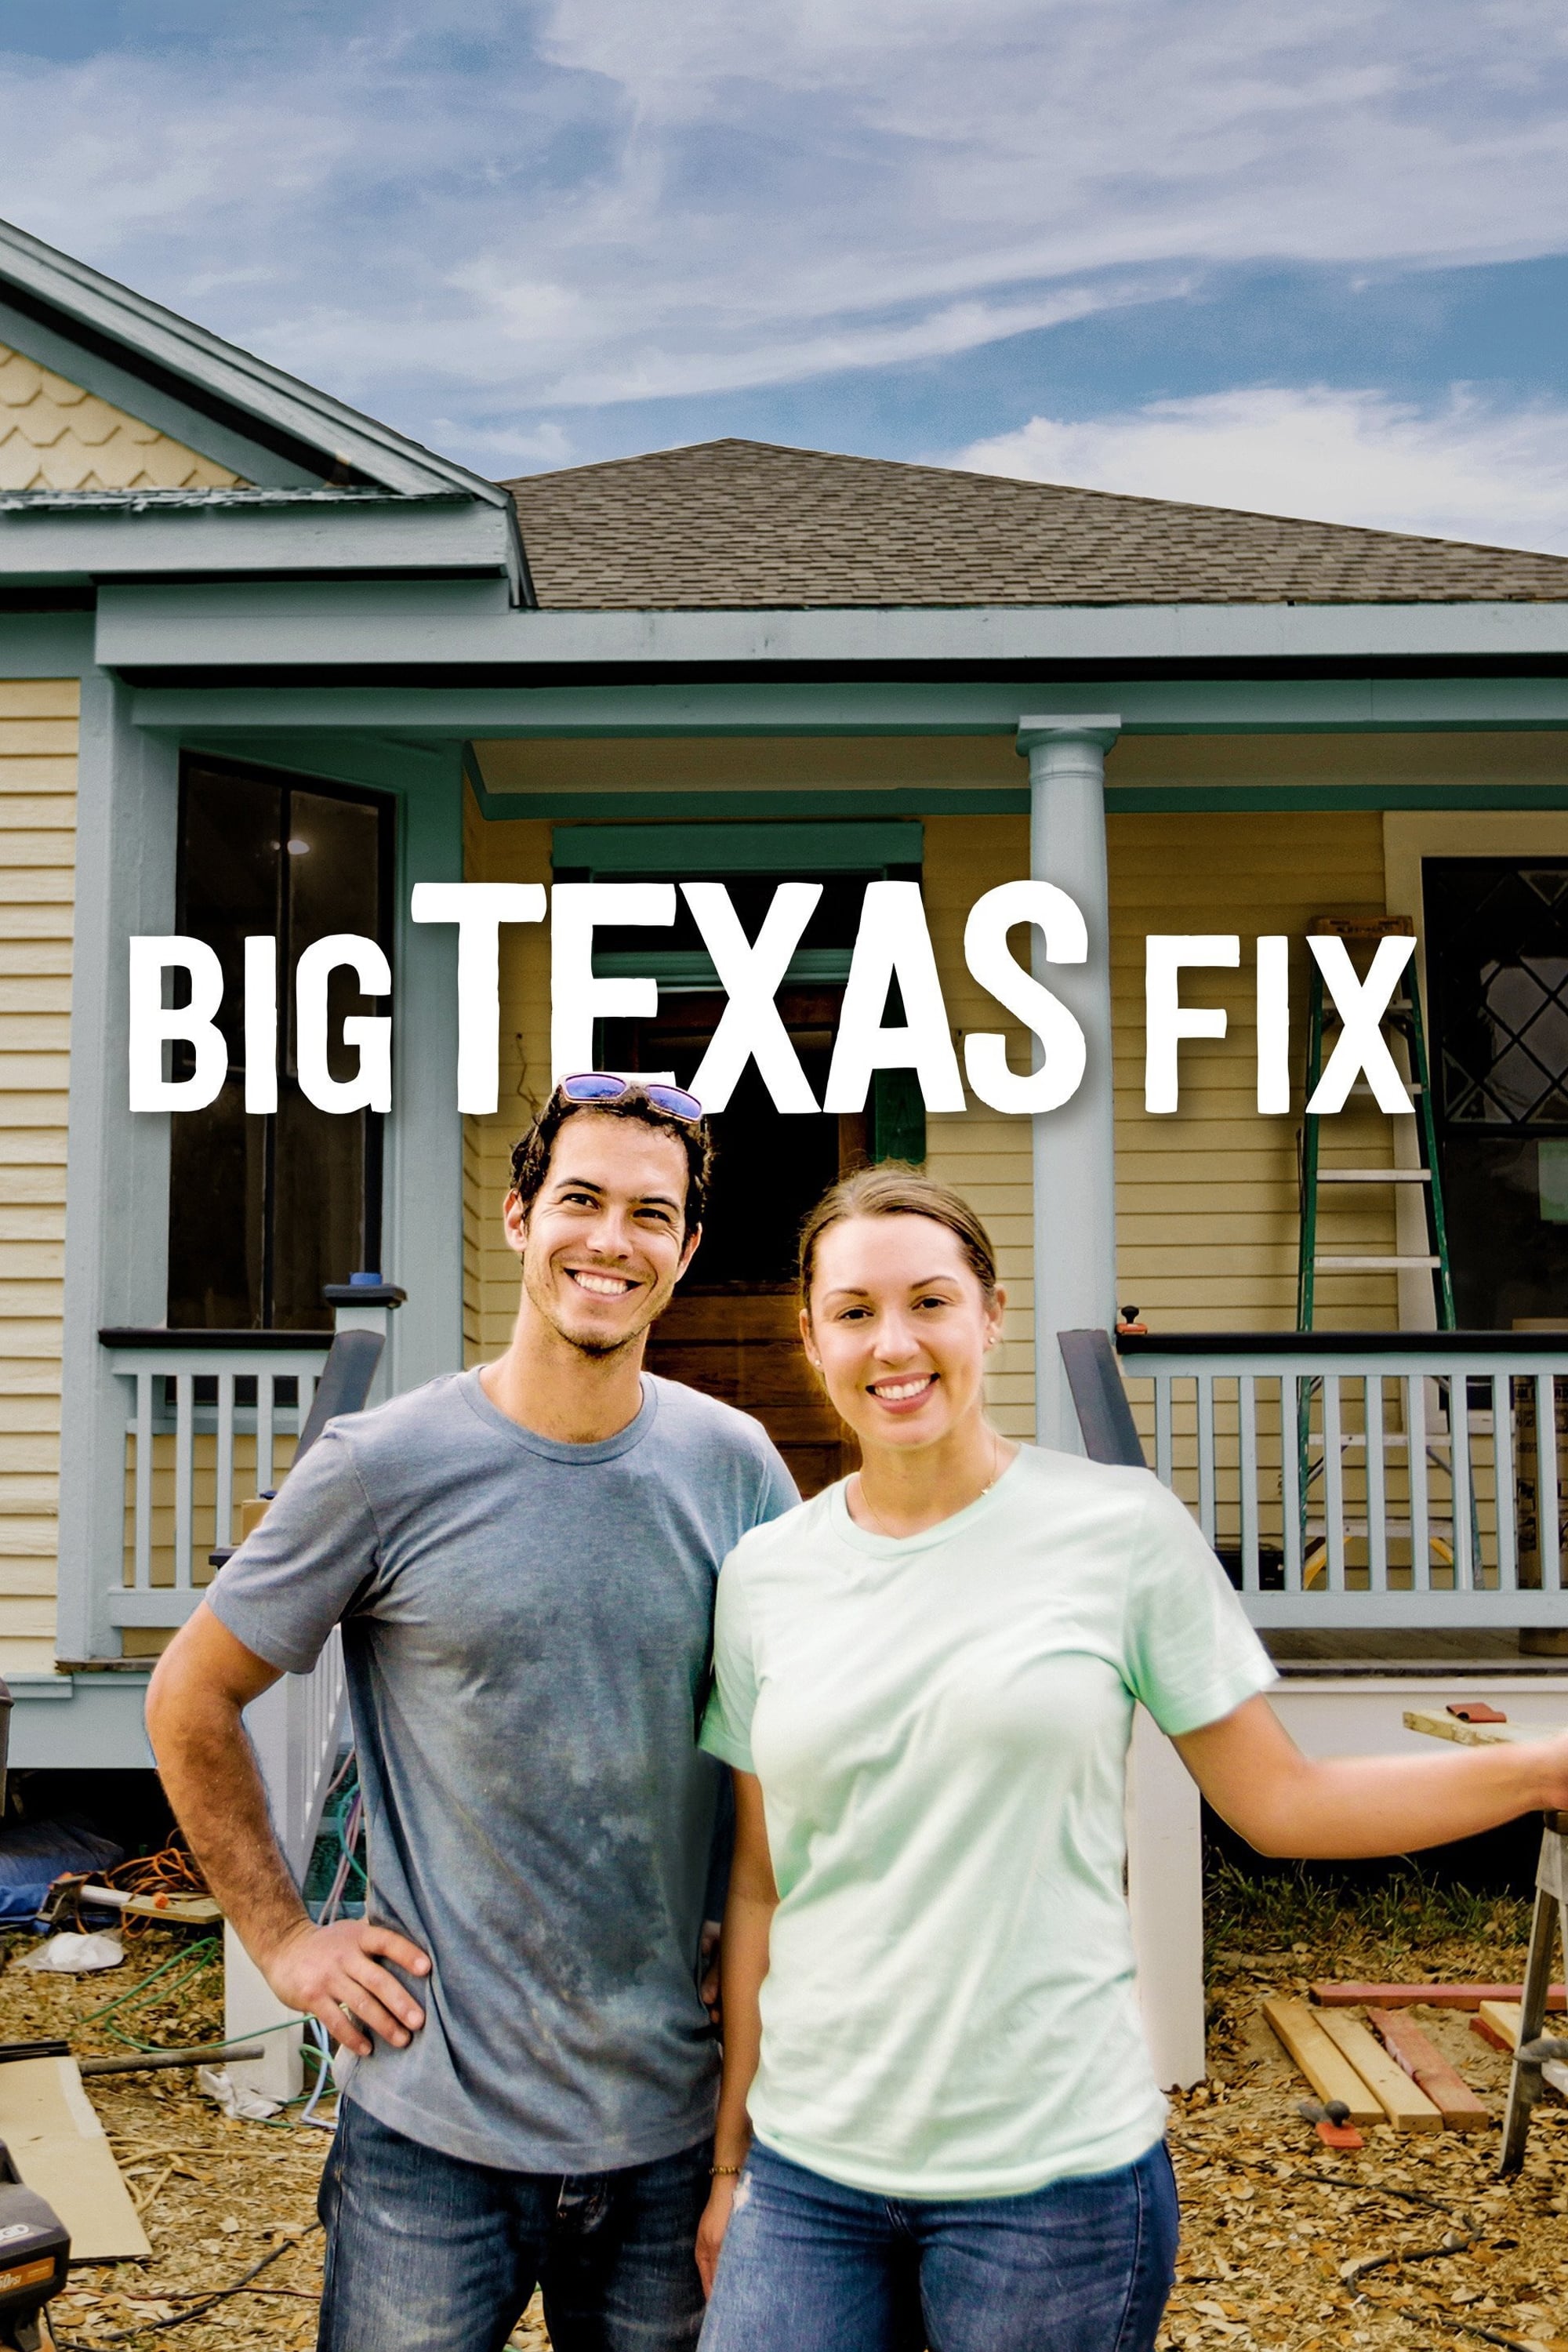 Big Texas Fix